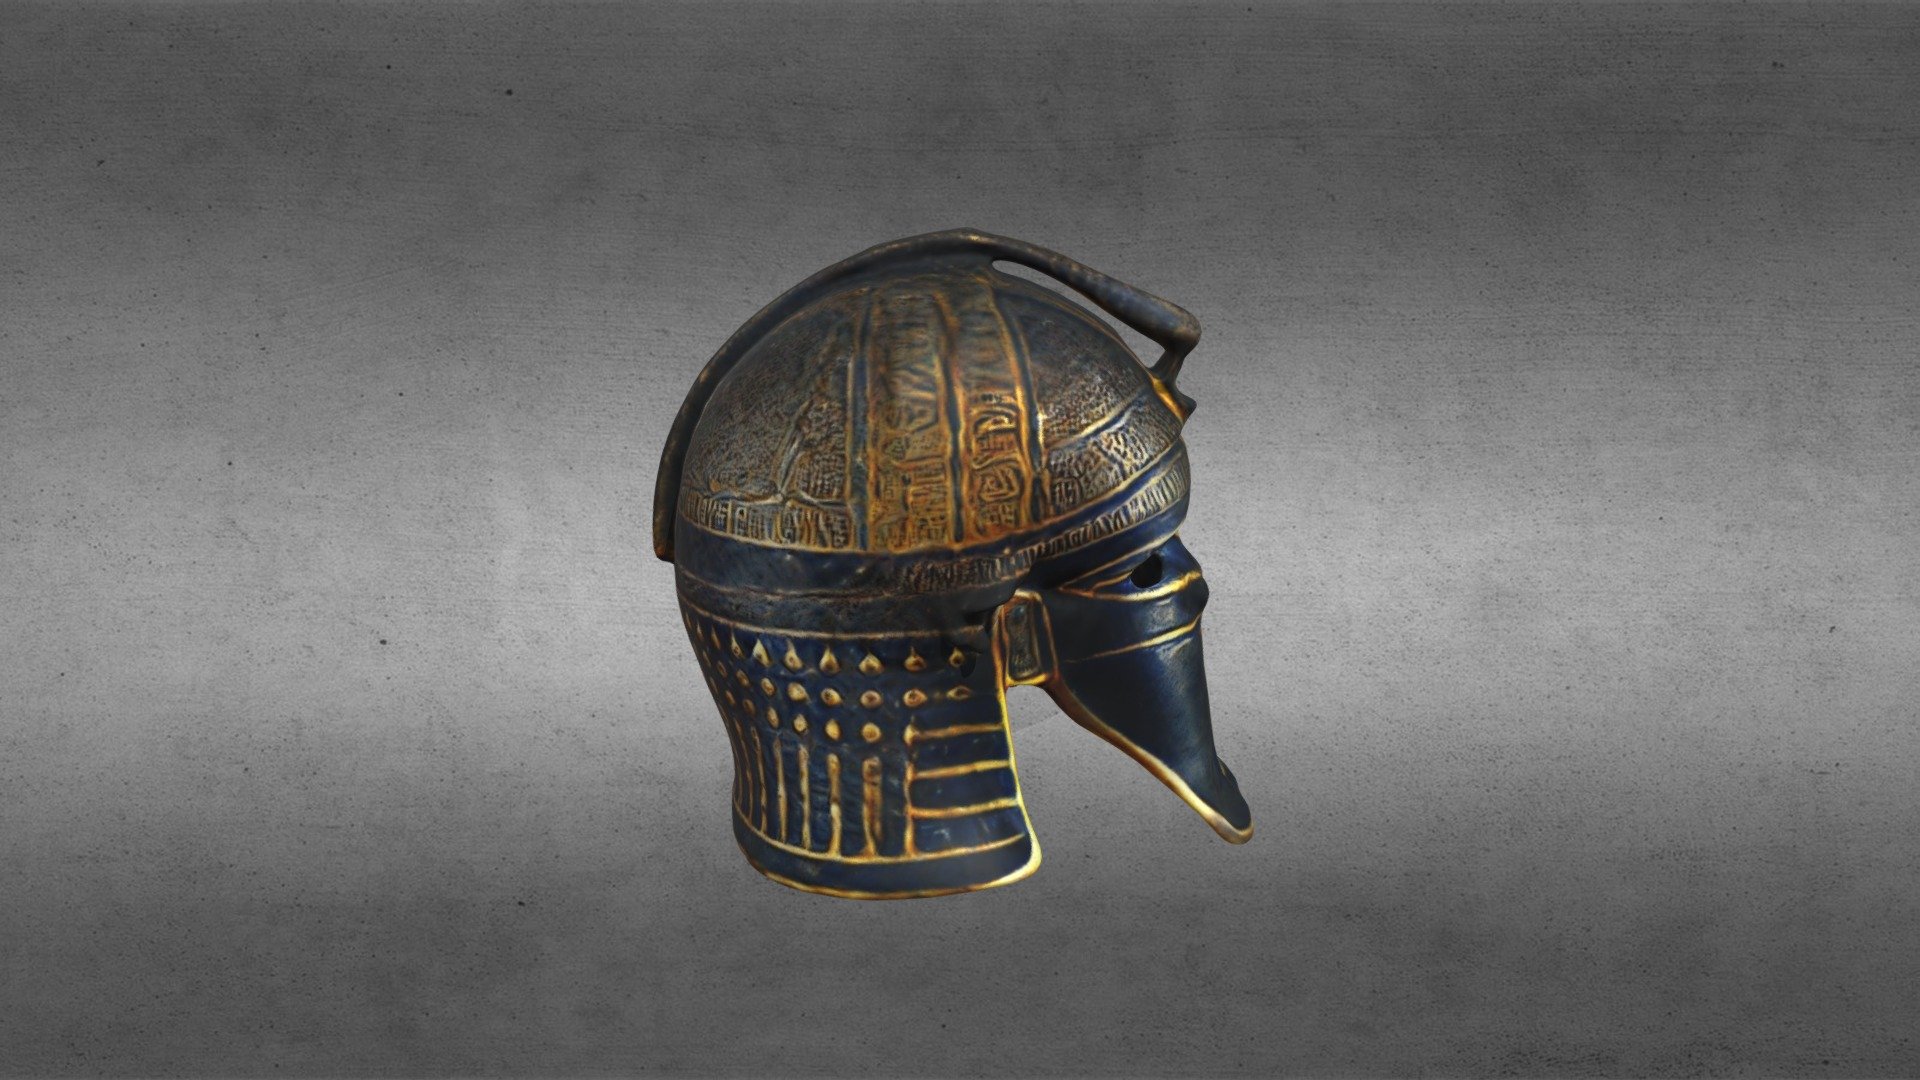 The helmet of an ancient Egyptian warrior, dark color, gilded.
Шлем древнеегипетского воина, темного цвета, с позолотой 3d model